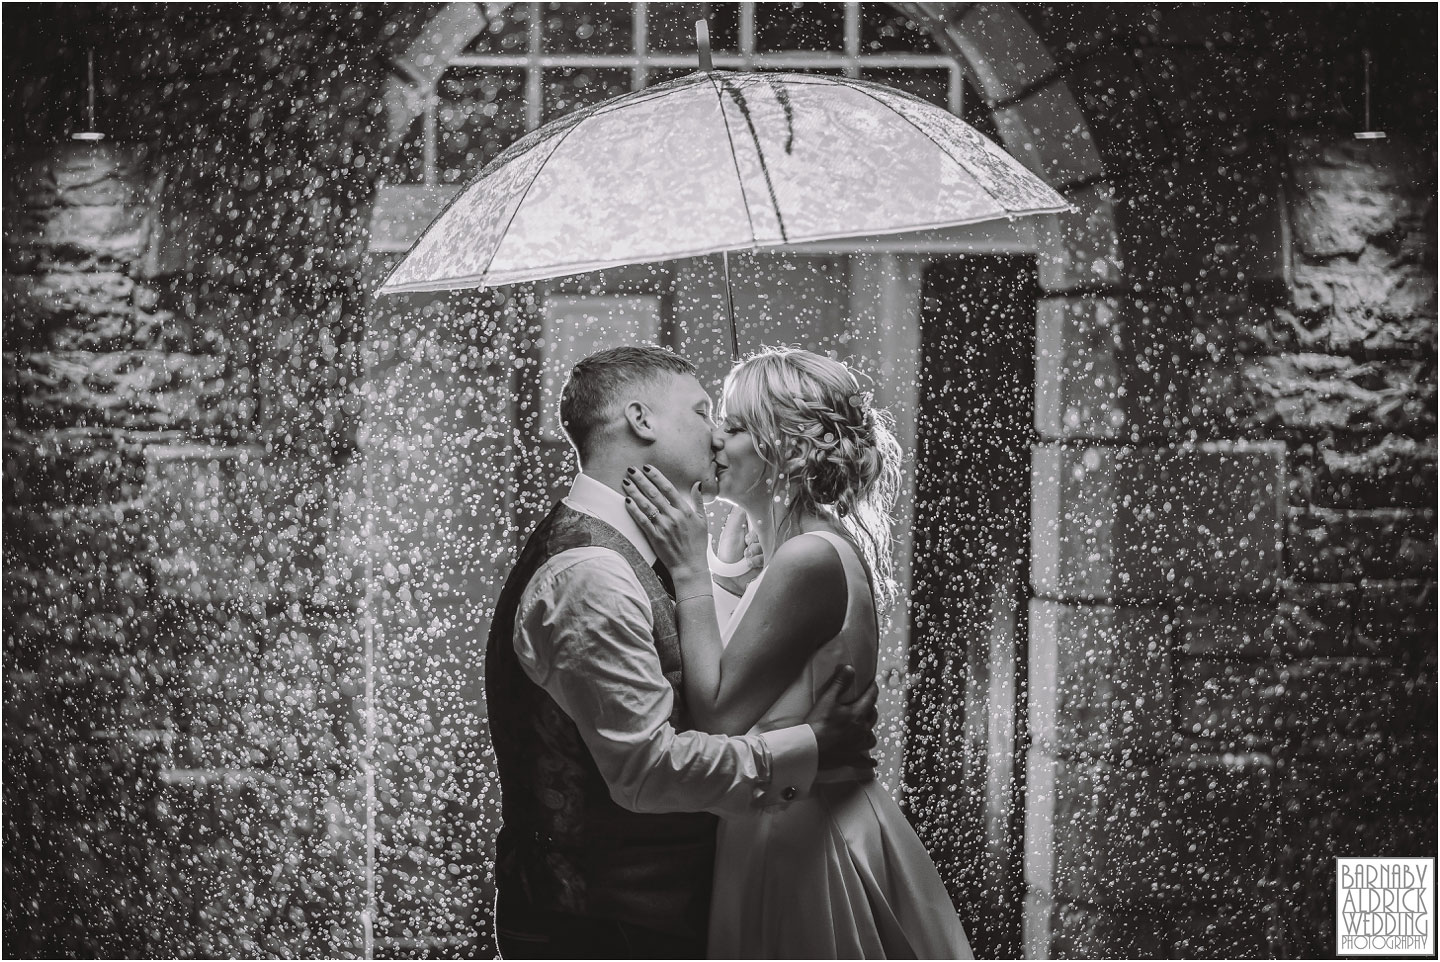 Evening Rain flash wedding photo, Awesome evening wedding photo, amazing rain wedding photo,